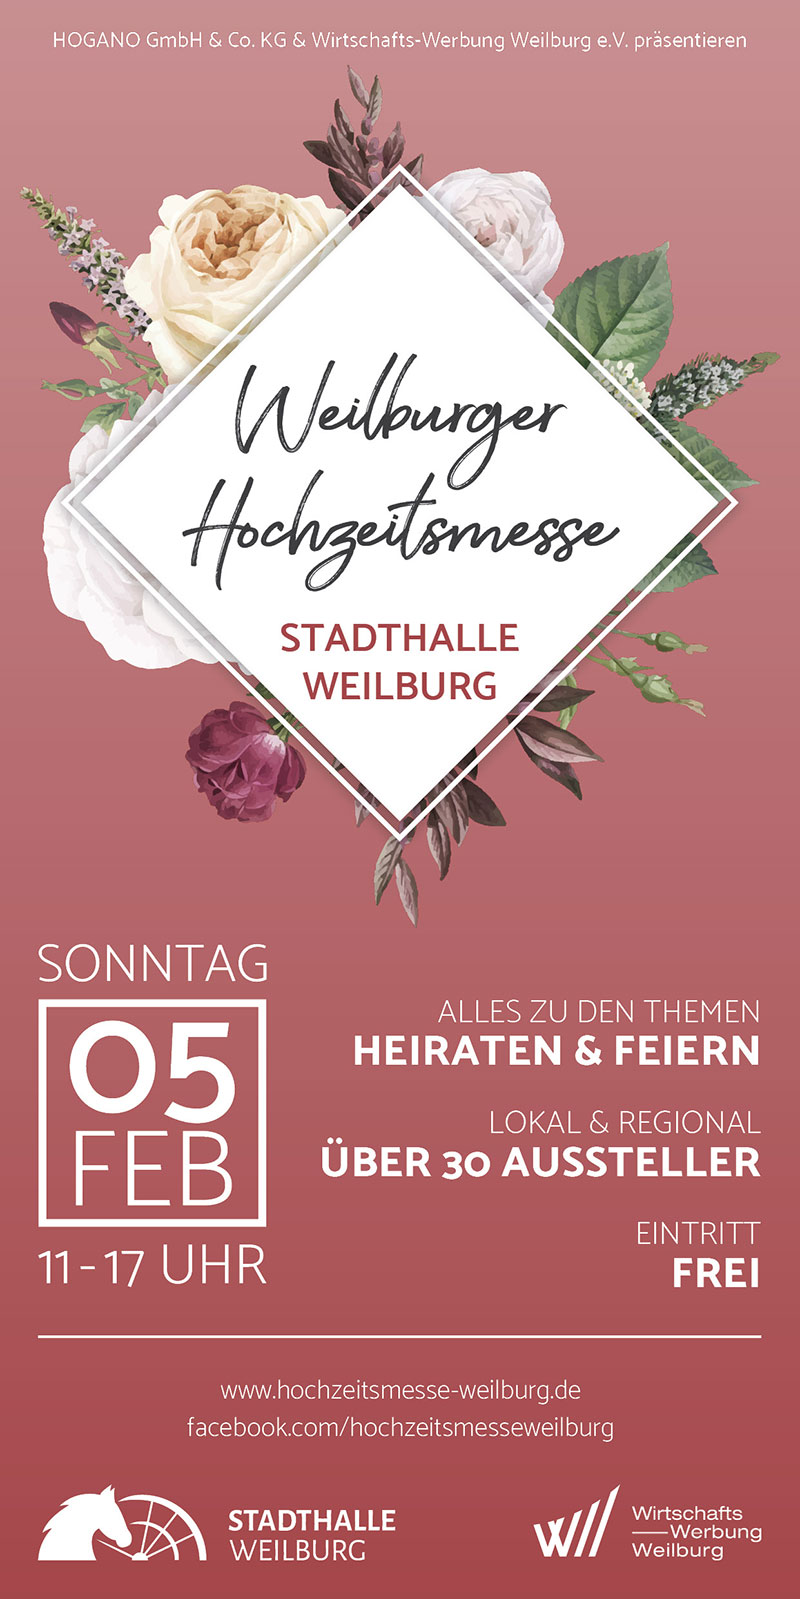 Anzeige-Hochzeitsmesse-Weilburg-1-23.jpg